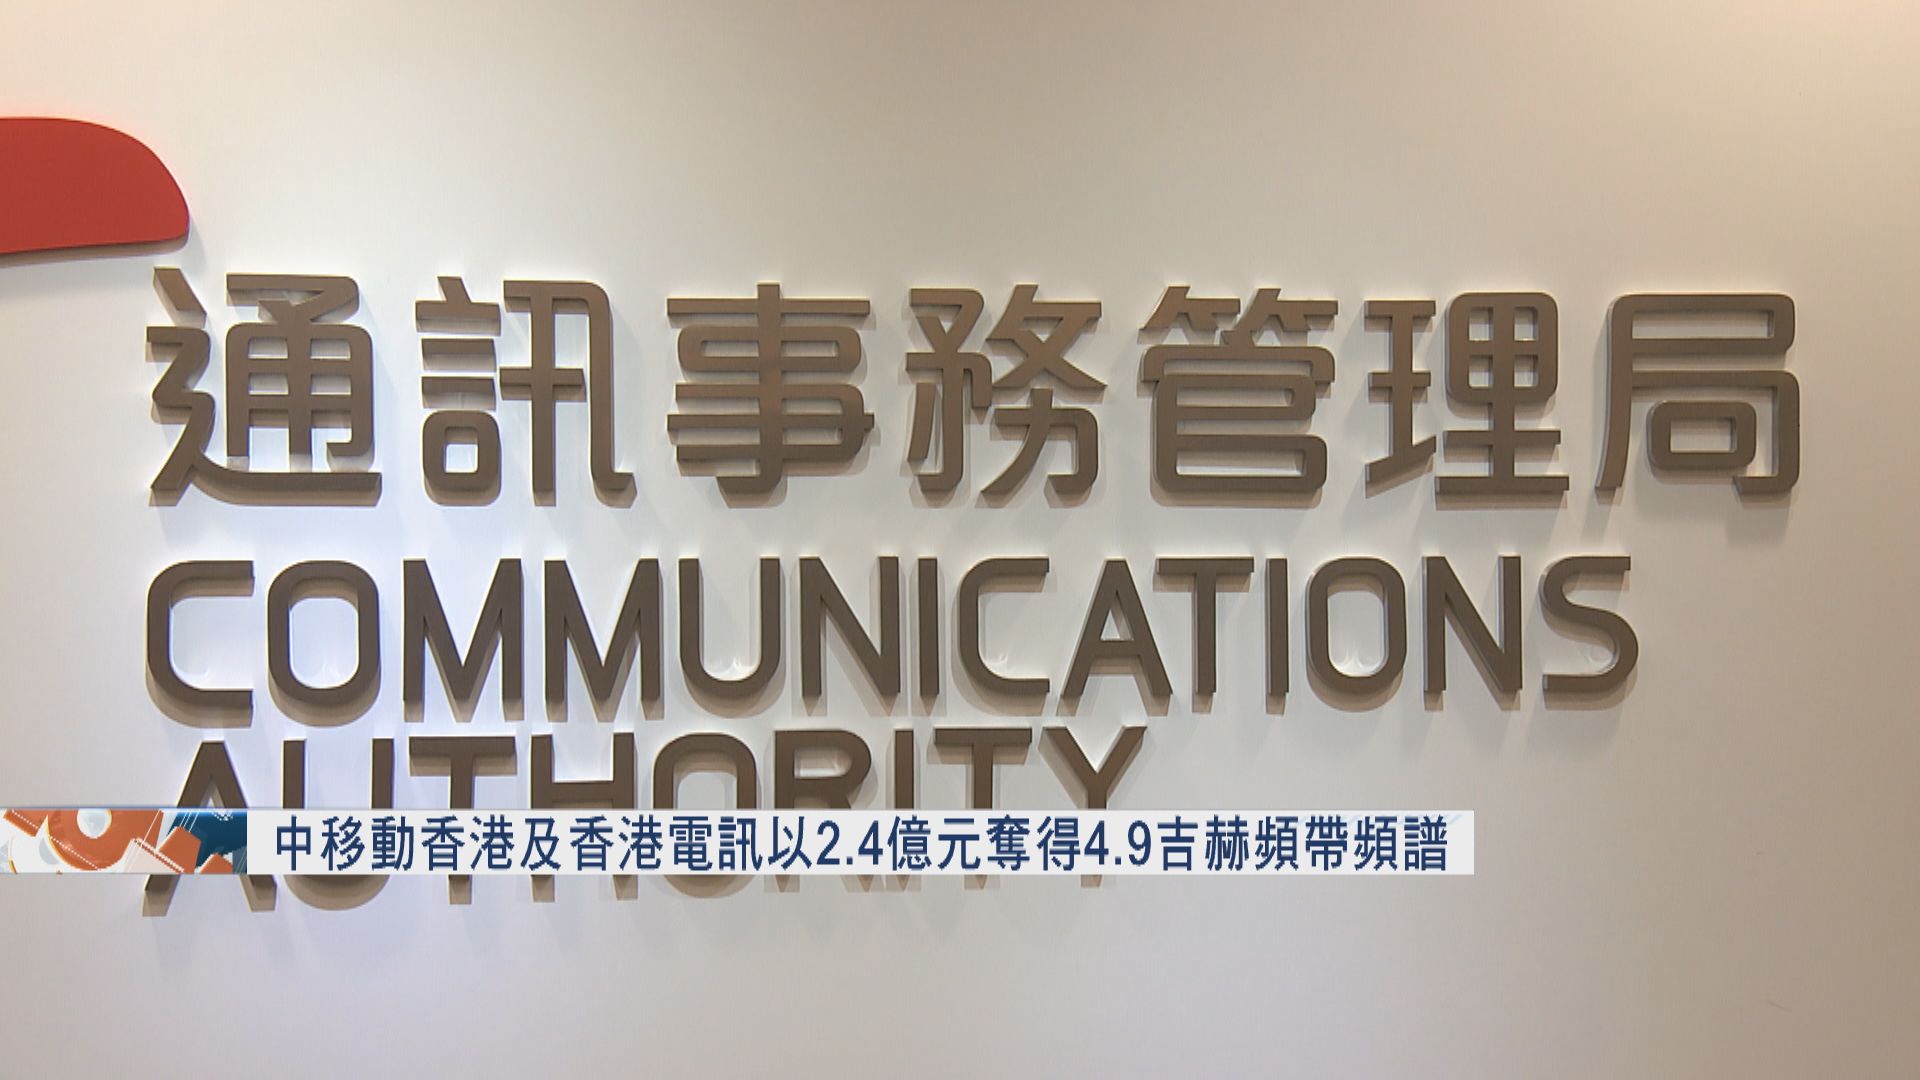 【底價投得】香港電訊及中移動香港以2.4億元奪5G 4.9吉赫頻譜